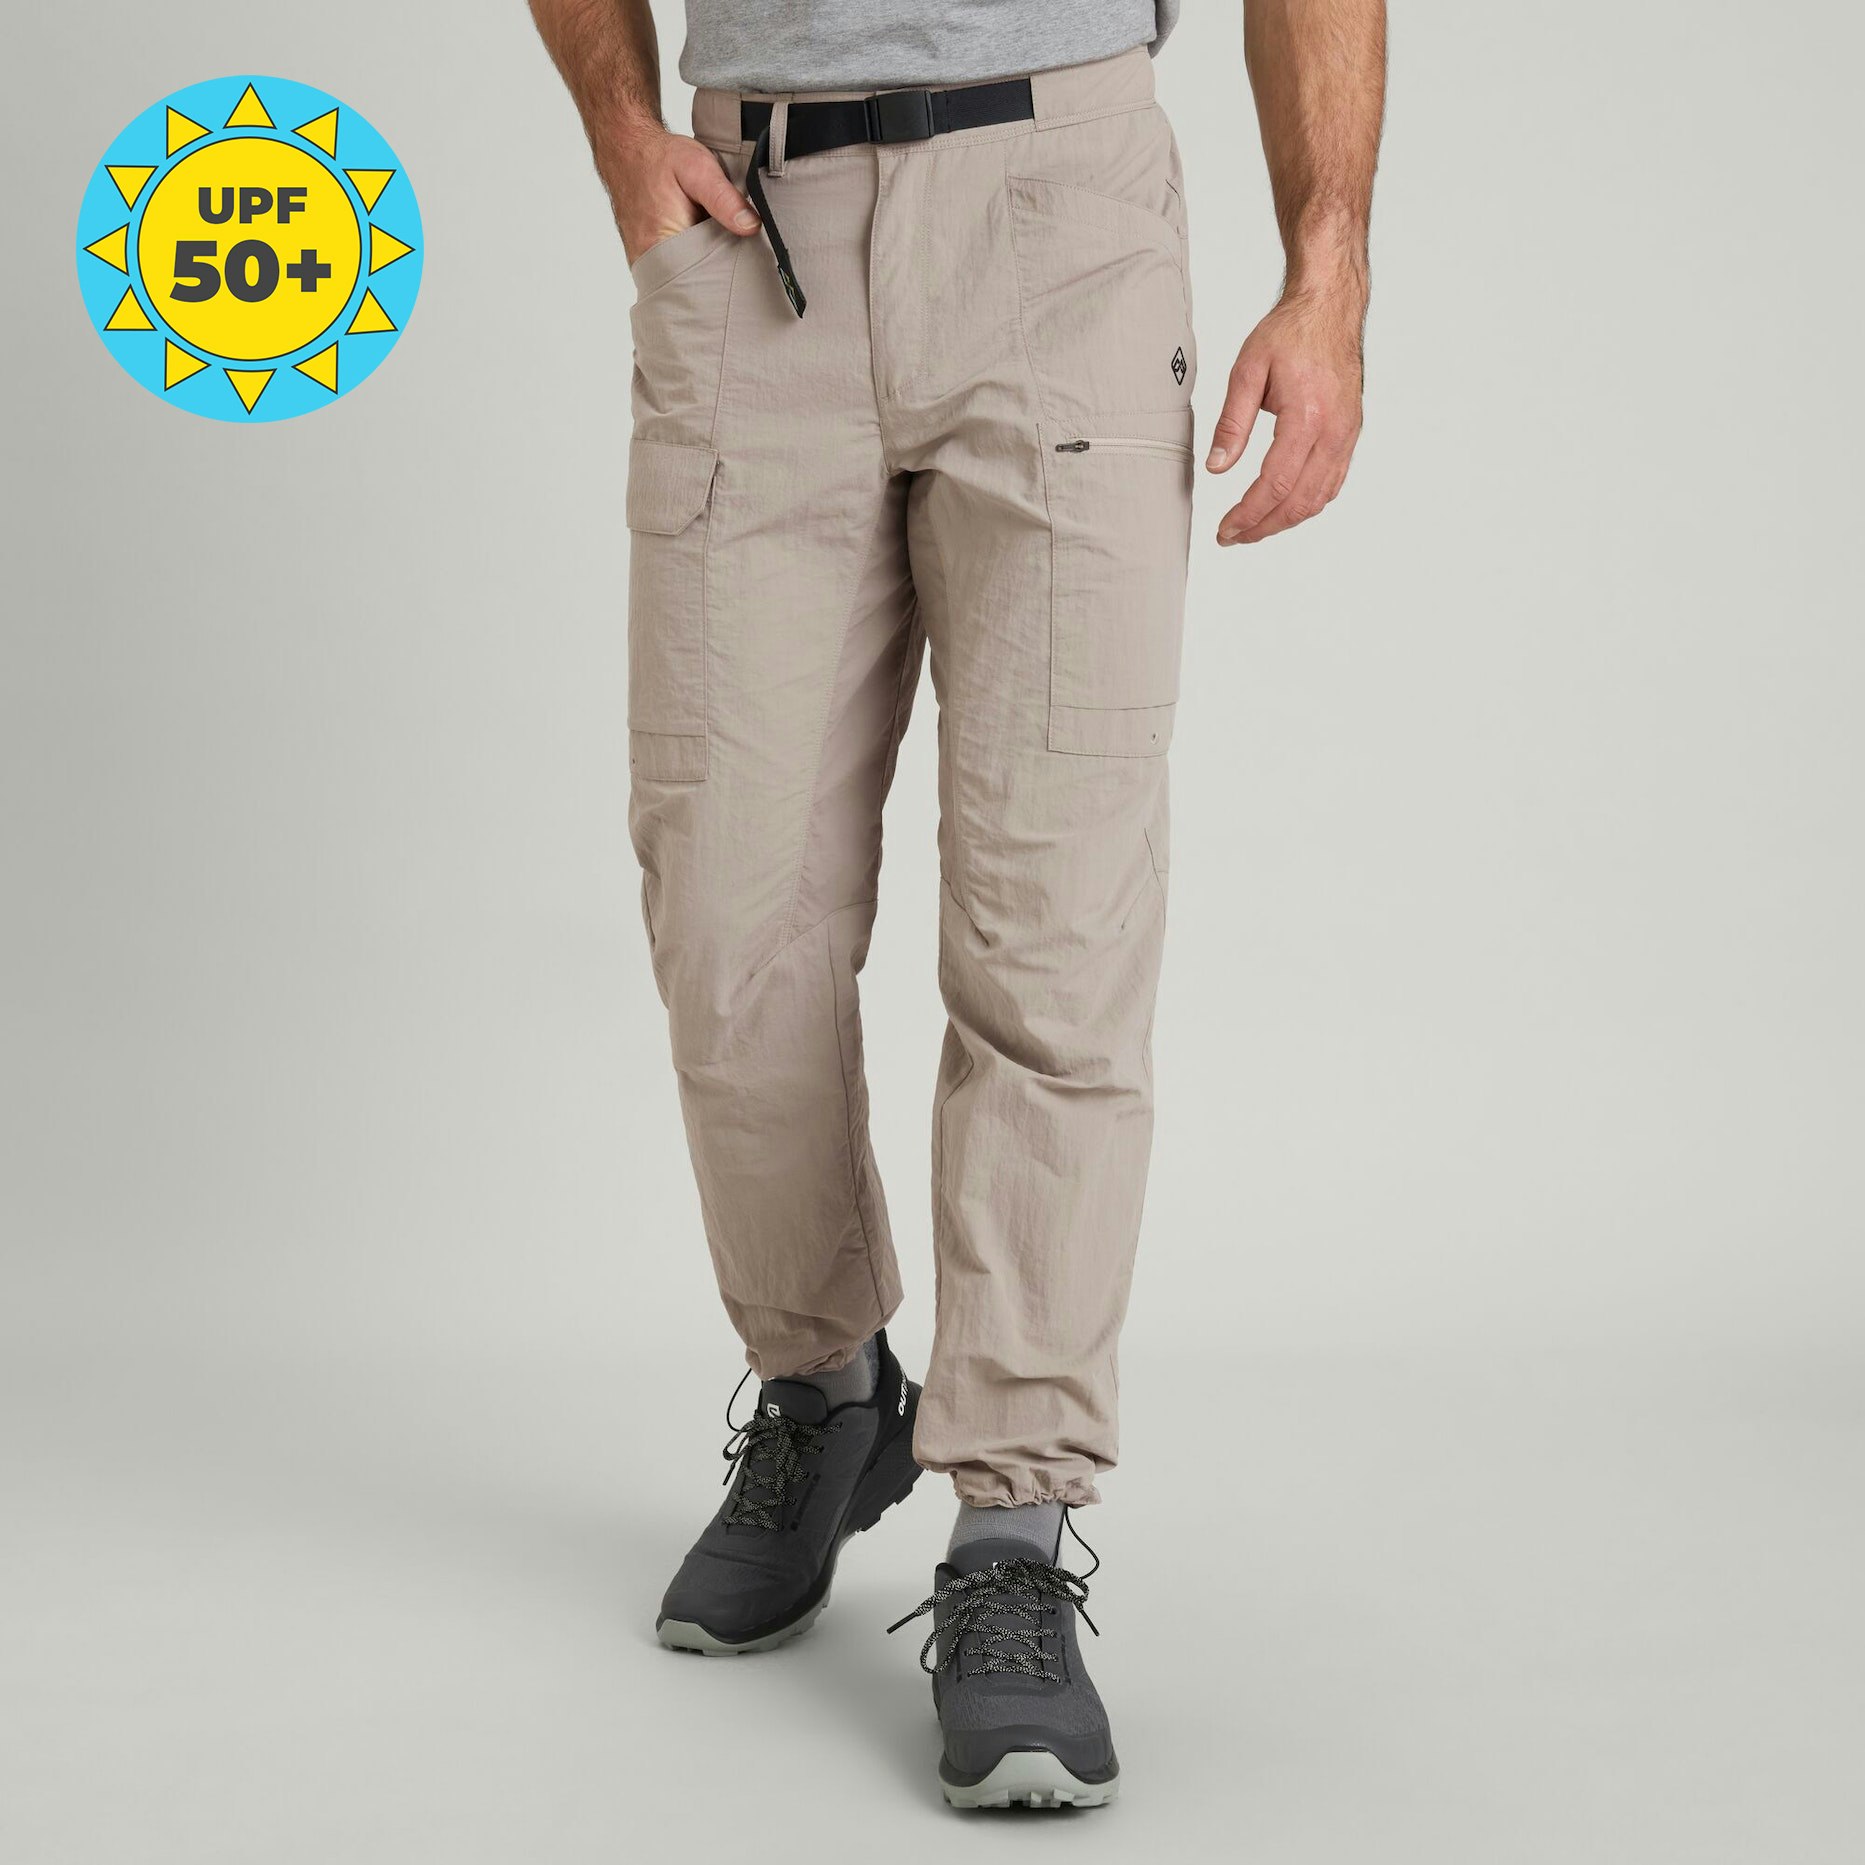 Buy Men's Travel Trekking Cargo Trousers Online